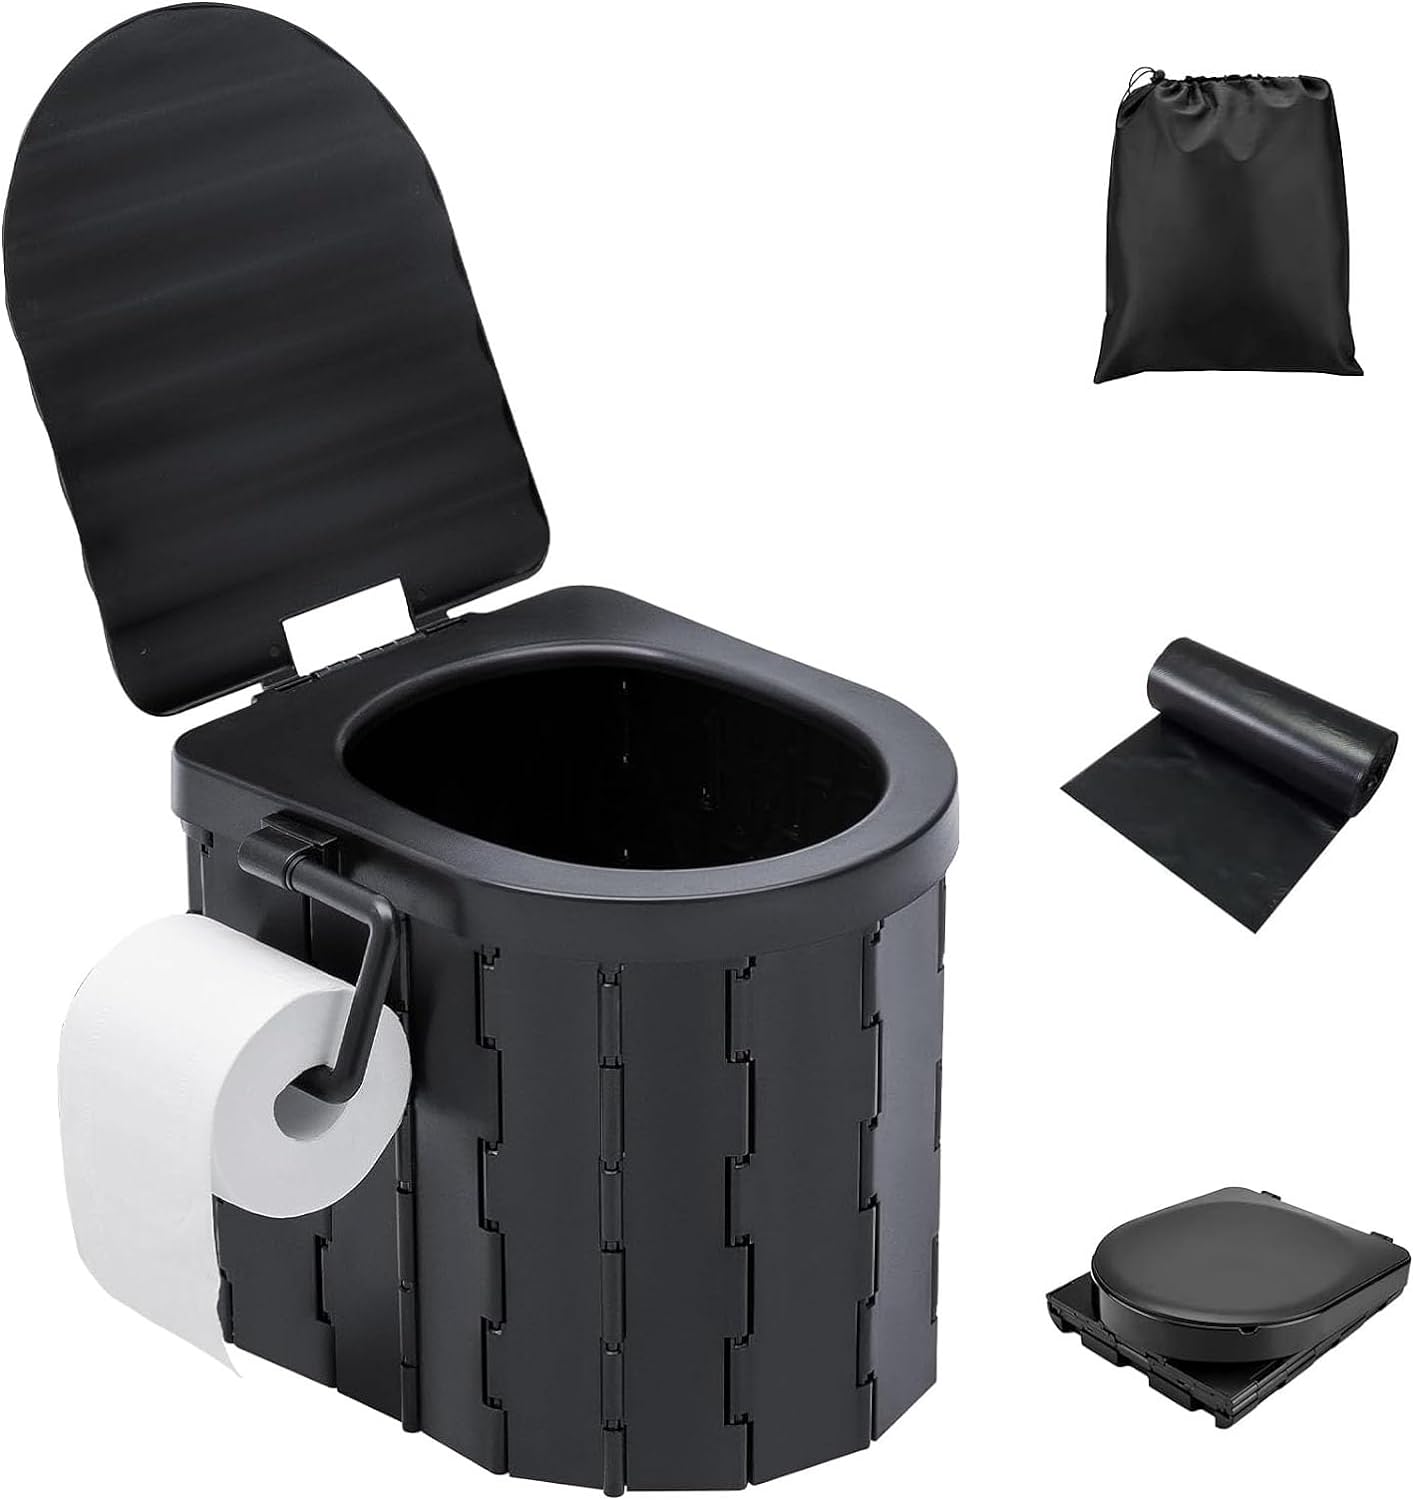 携帯トイレ 簡易トイレセット 折り畳み式 ポータブルトイレ 蓋付き 耐荷重180kg トイレットペー...